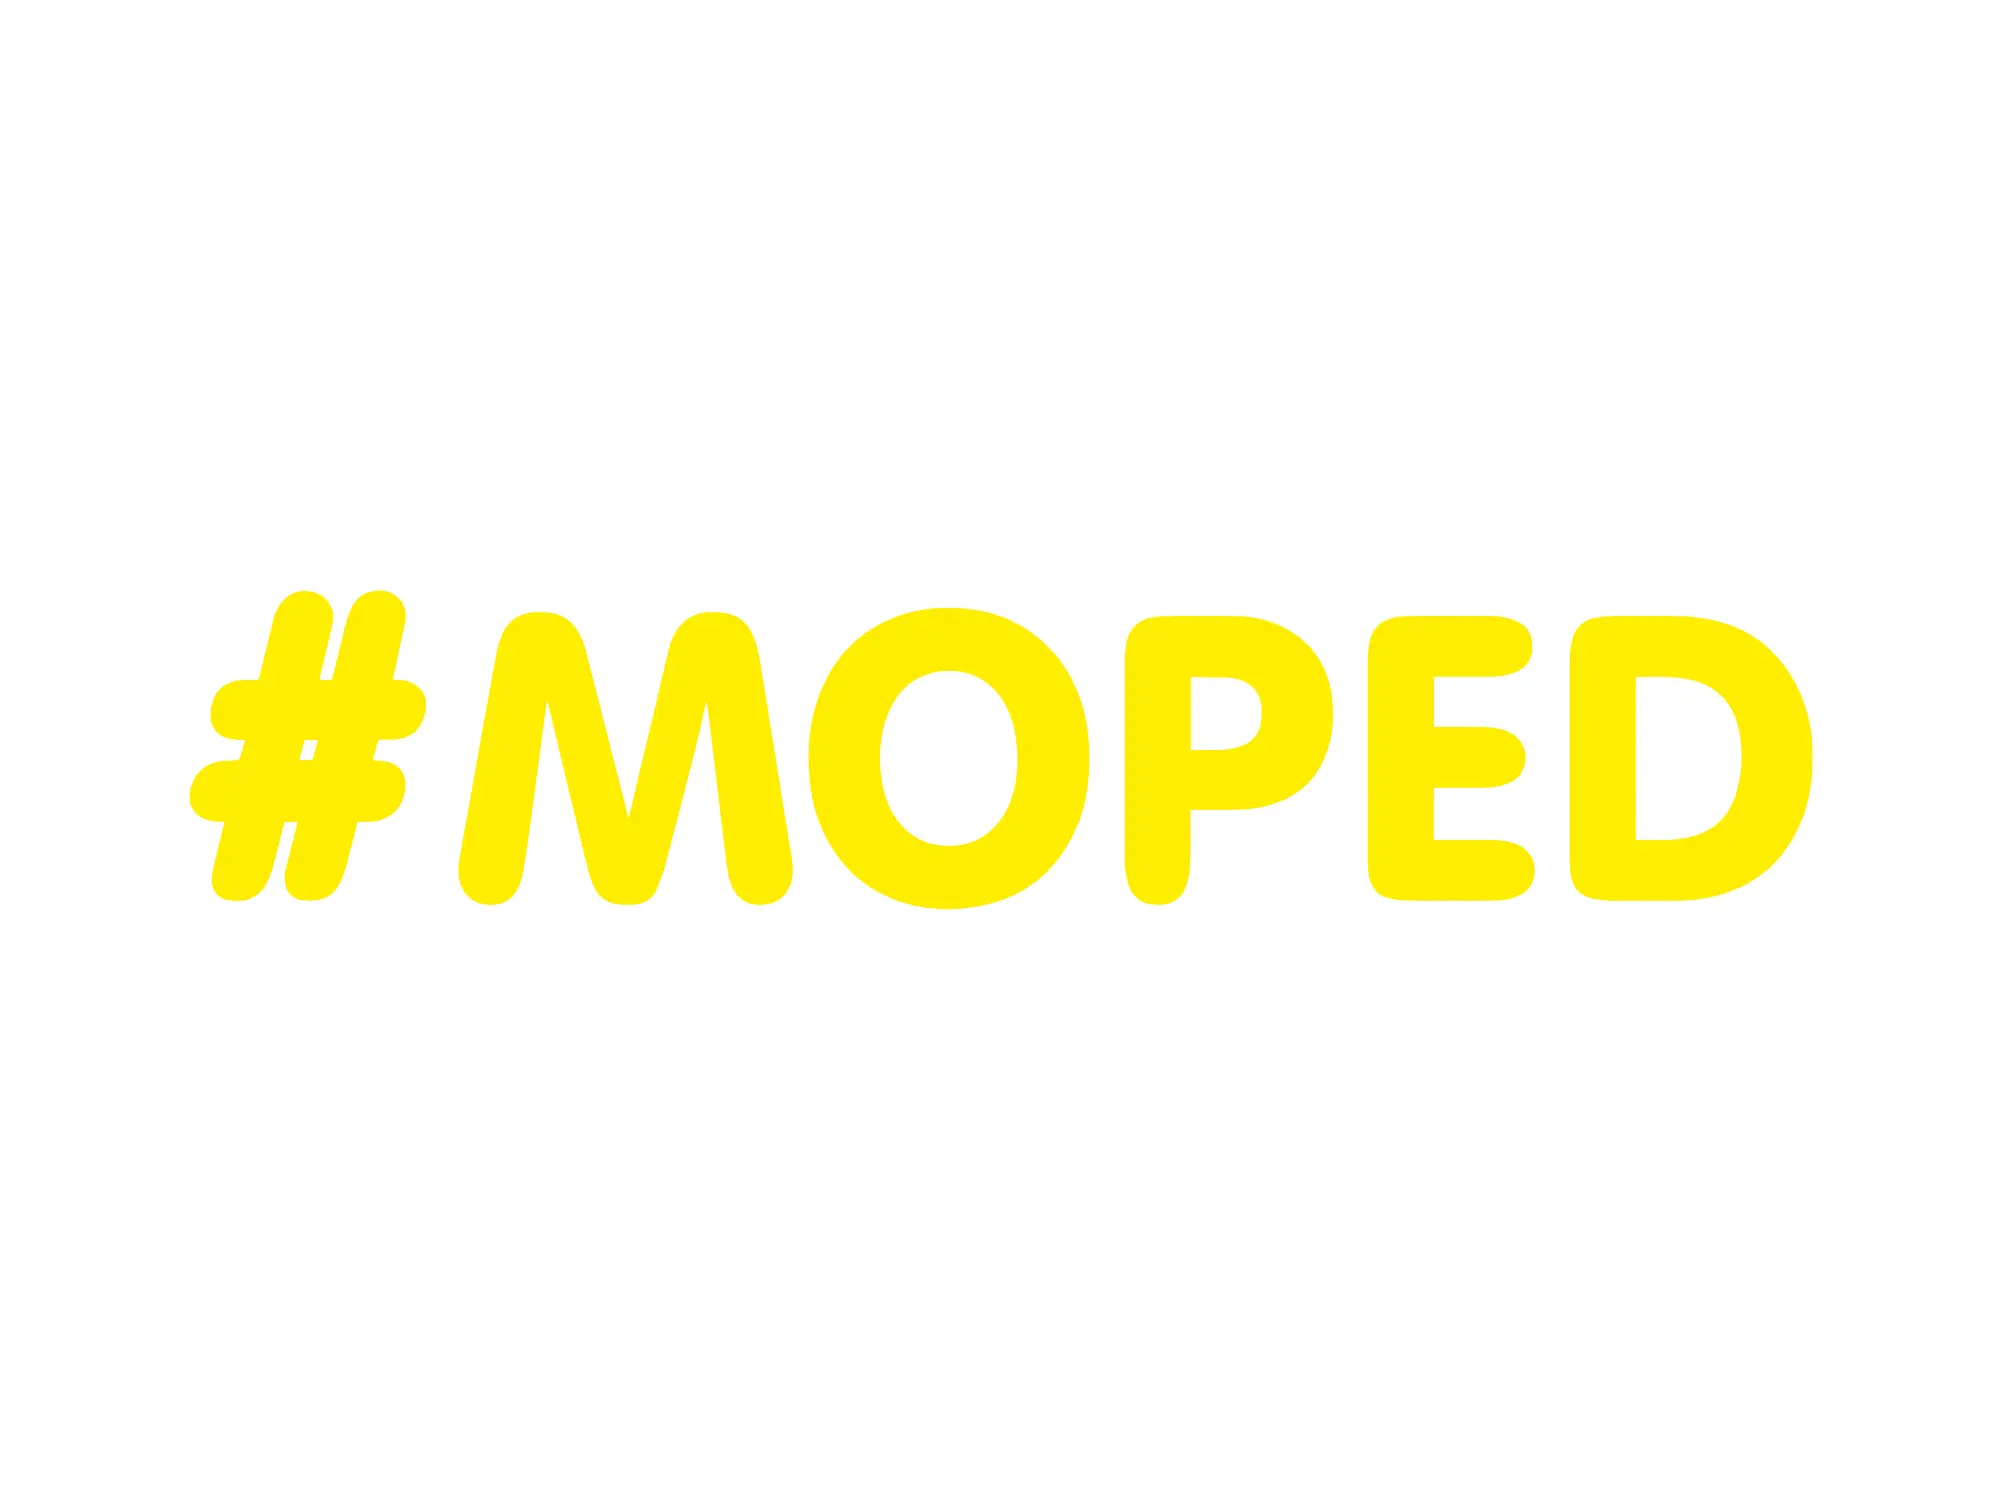 Aufkleber - "#MOPED" Folienplot Gelb, mit Übertragungsfolie, Art.-Nr.: 10069657 - Bild 1